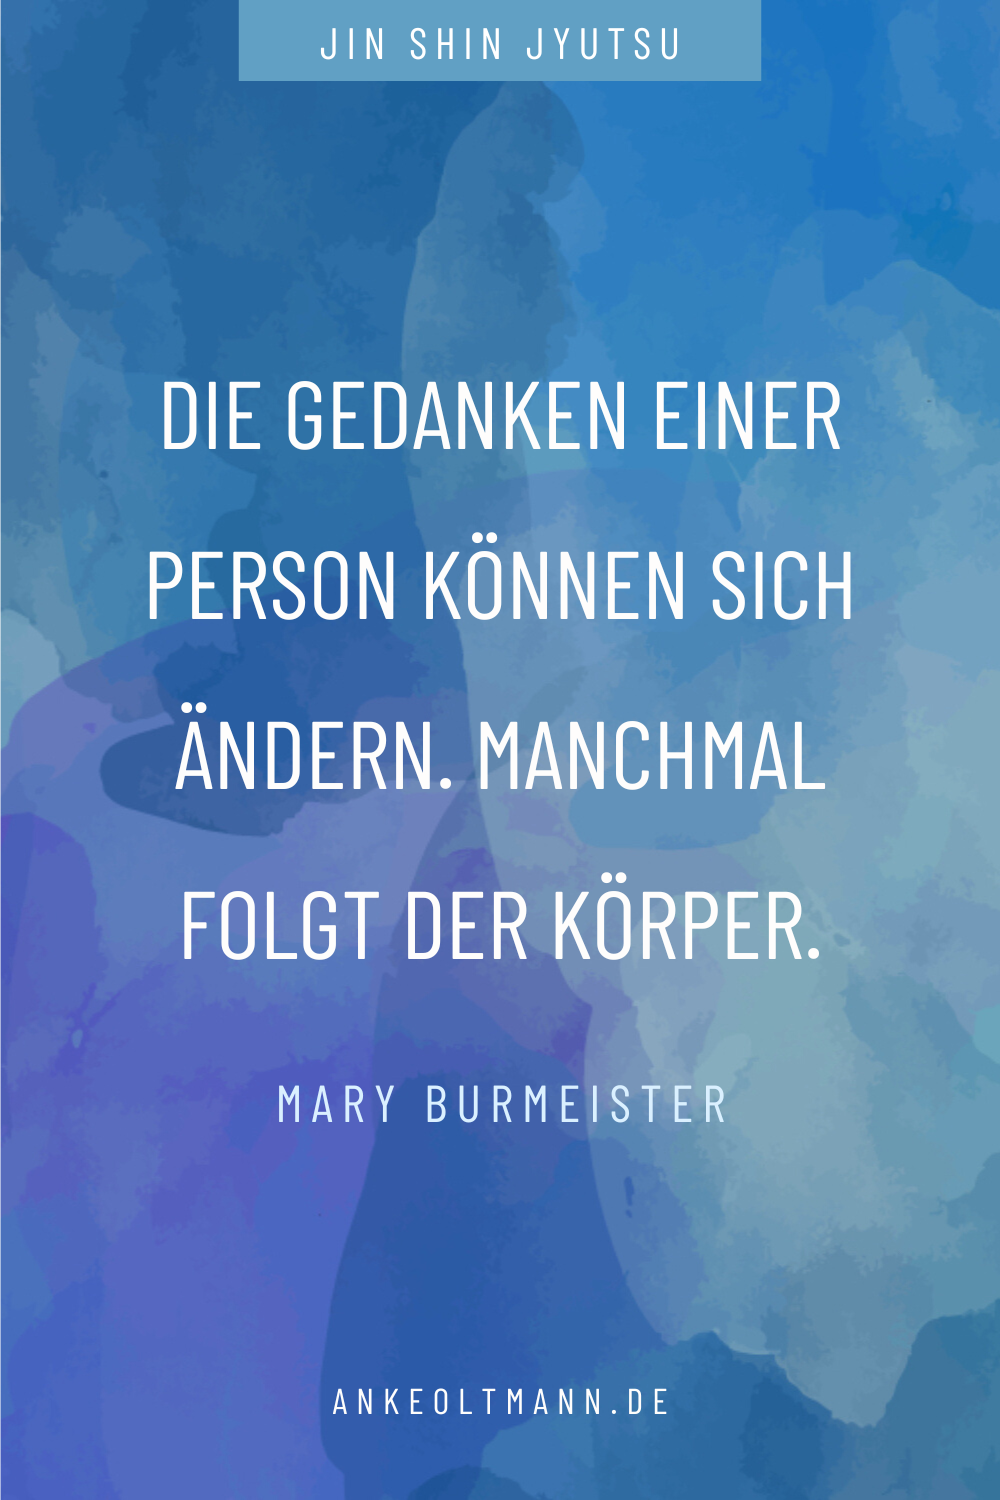 Mary Burmeister Zitat zum Strömen